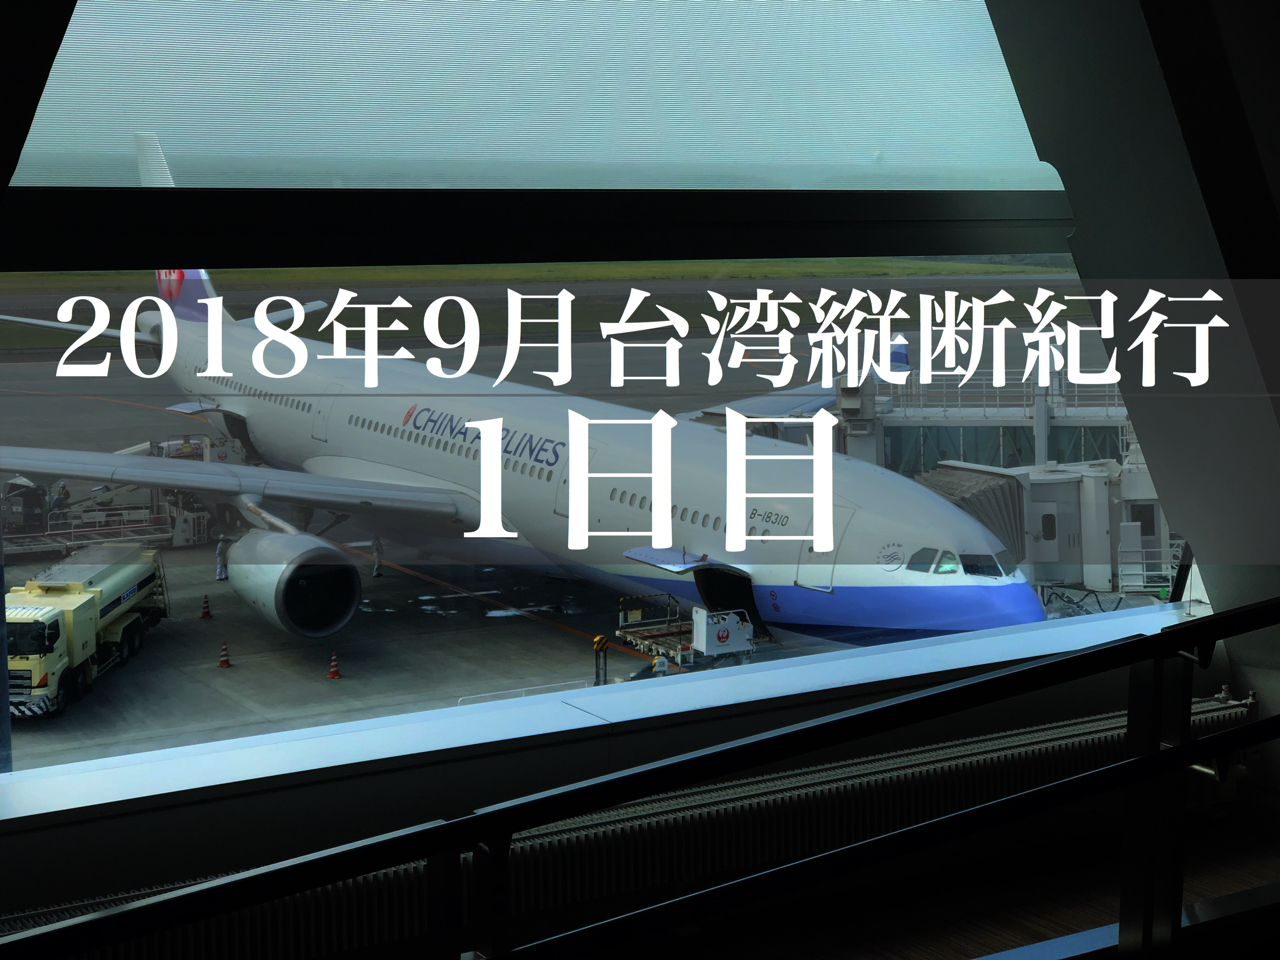 旅日記 新千歳から台北へ 機材変更が残念だった1日目 19年9月台湾旅行記その1 たぶろぐ